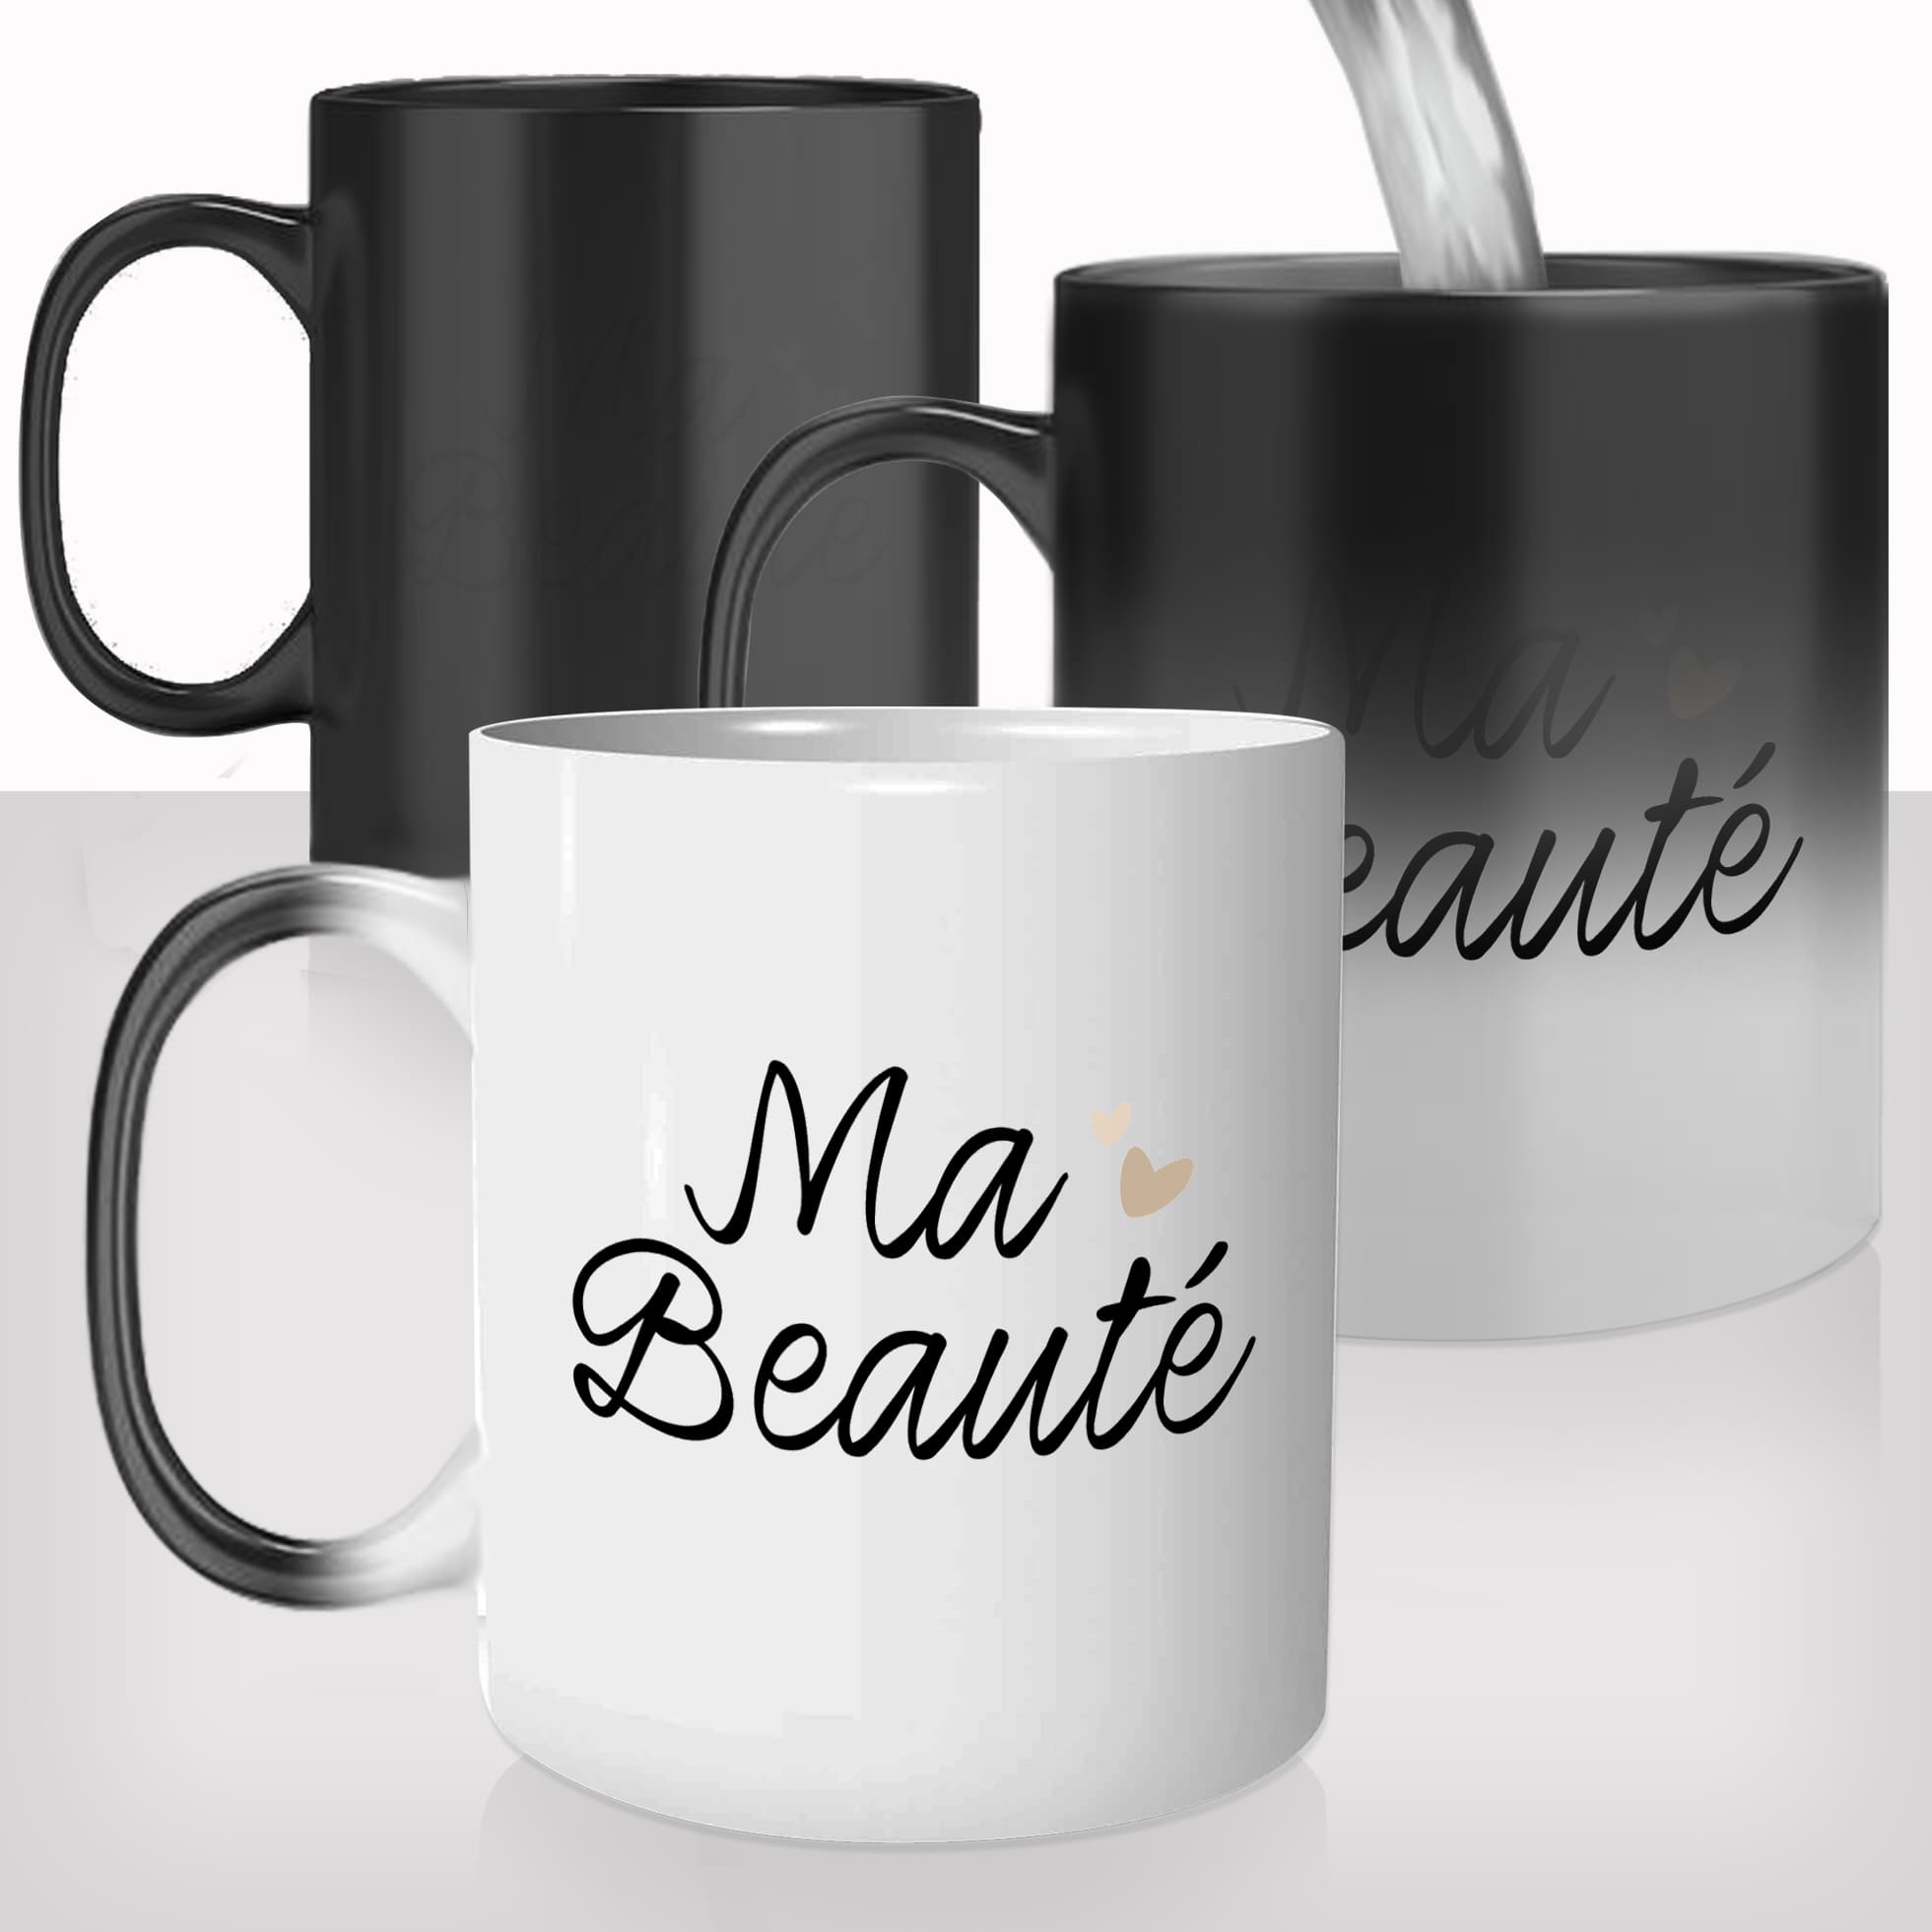 mug-magique-tasse-magic-thermo-reactif-femme-ma-beauté-cérie-belle-amour-copine-photo-personnalisable-drole-offrir-cadeau-fun-original